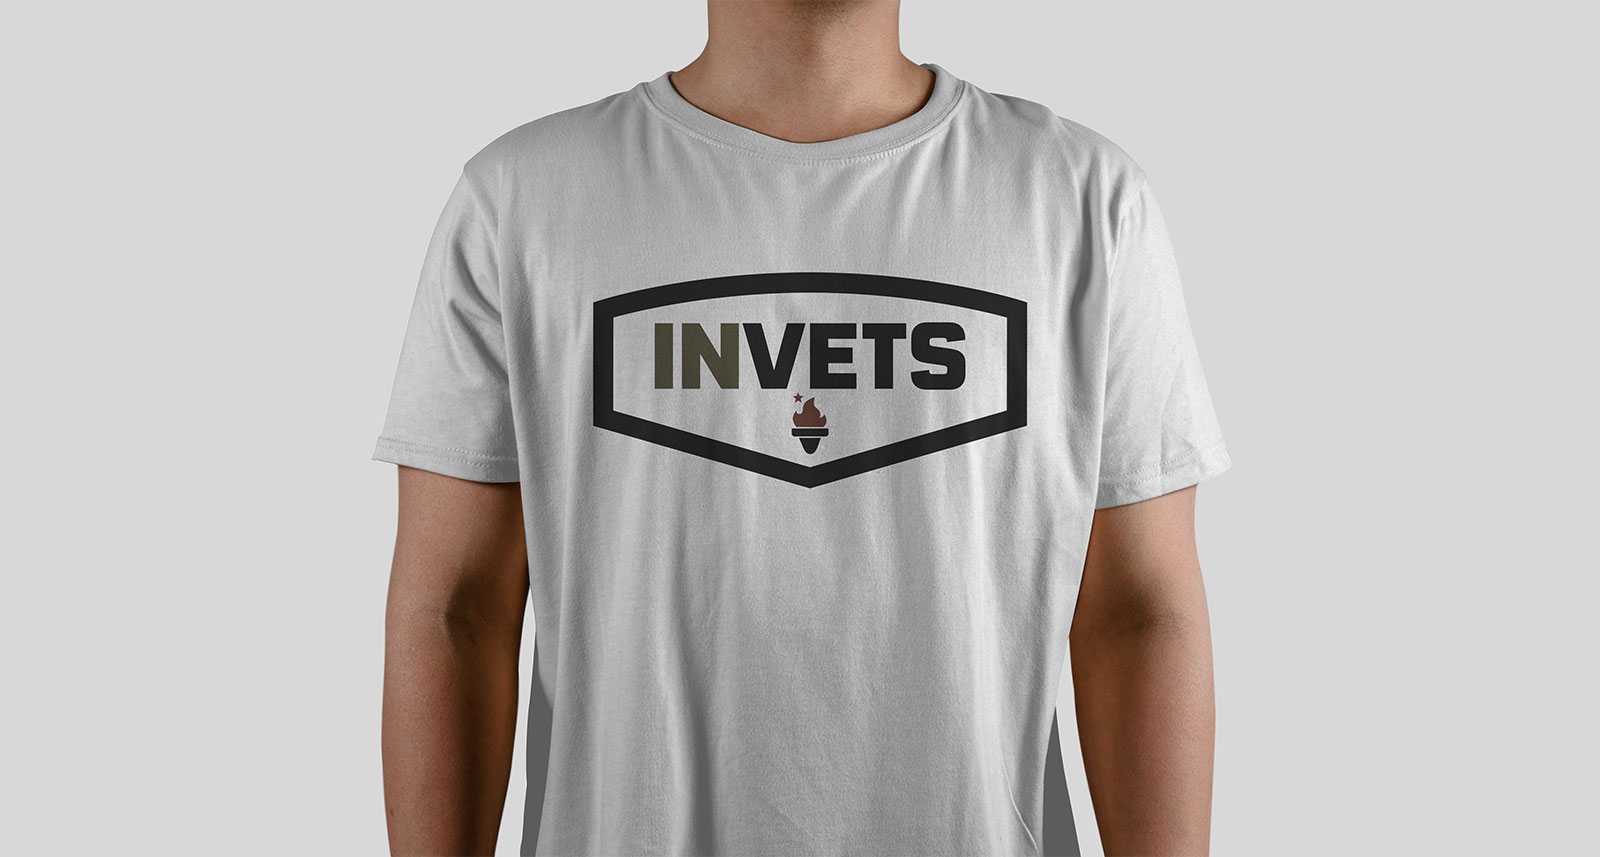 INvets Shirt